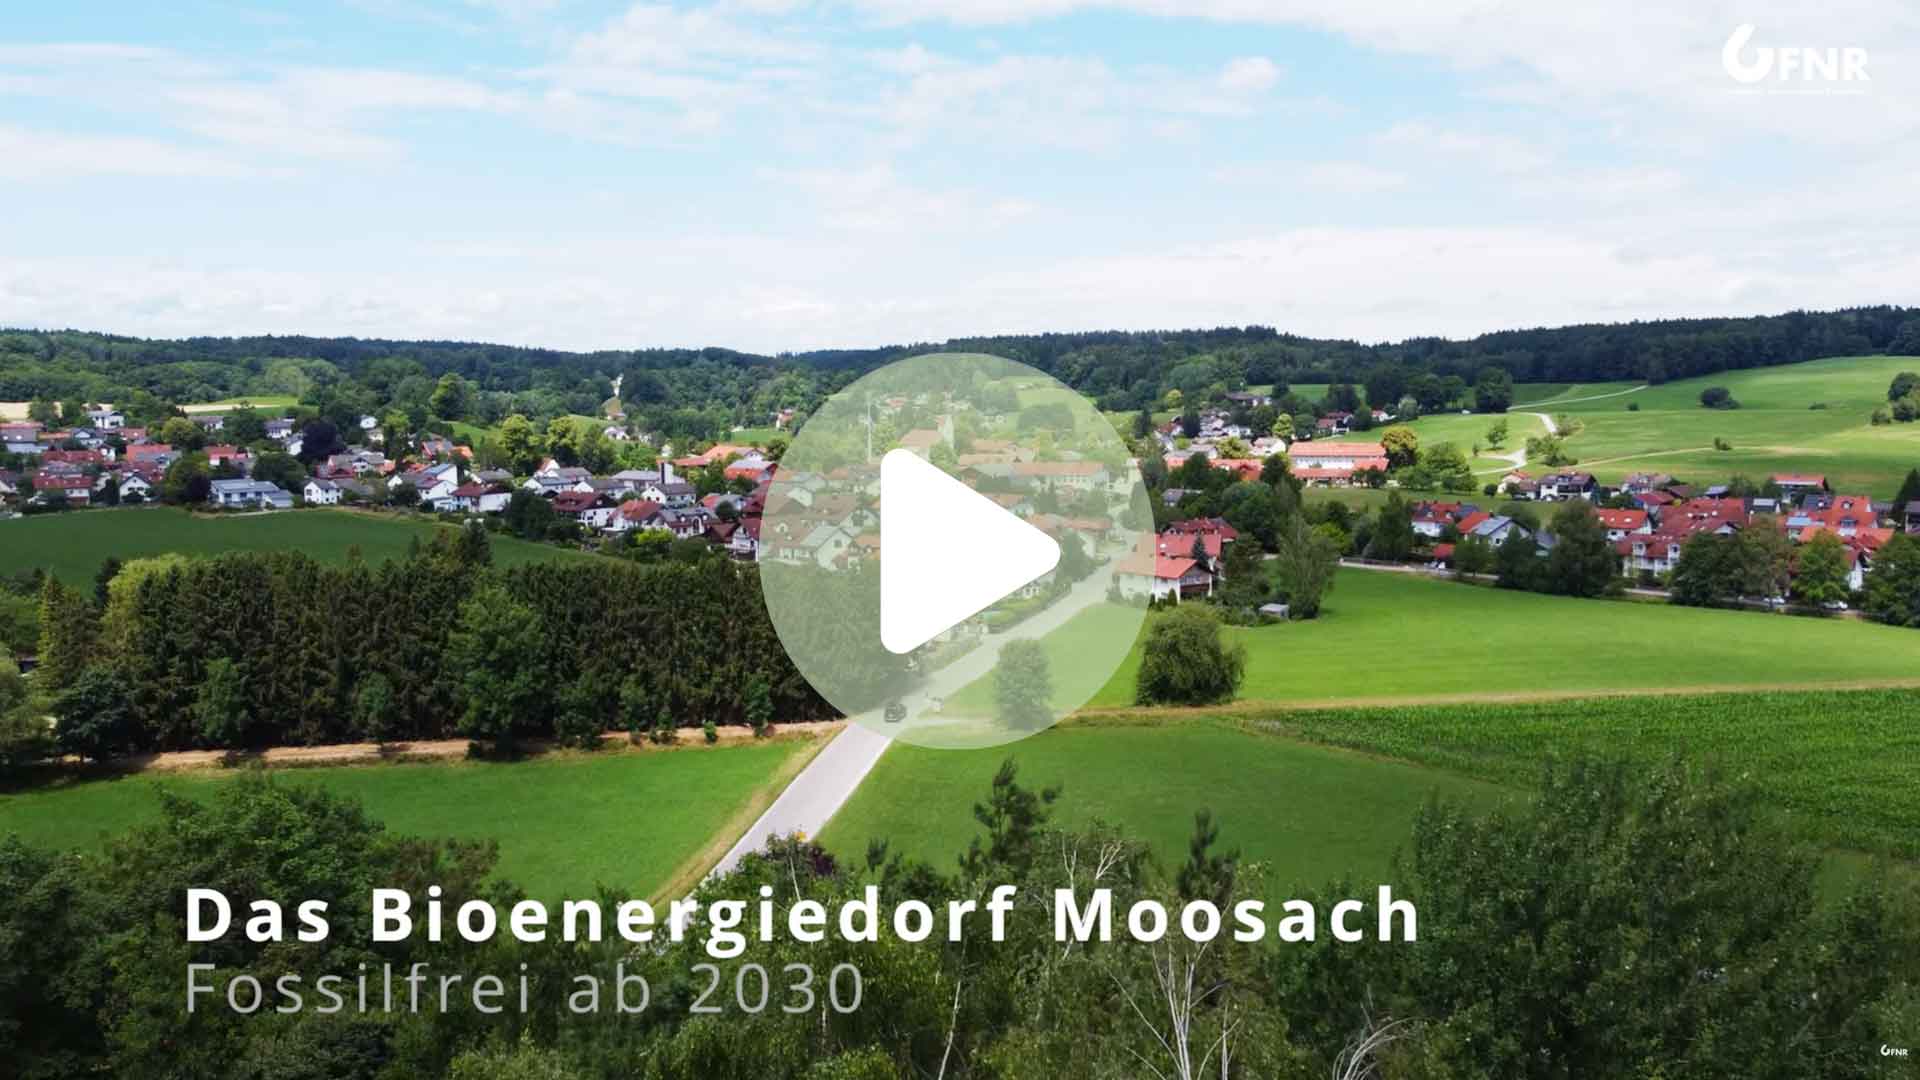 Das Bioenergiedorf Moosach. Bildlink zum Videobeitrag auf Youtube